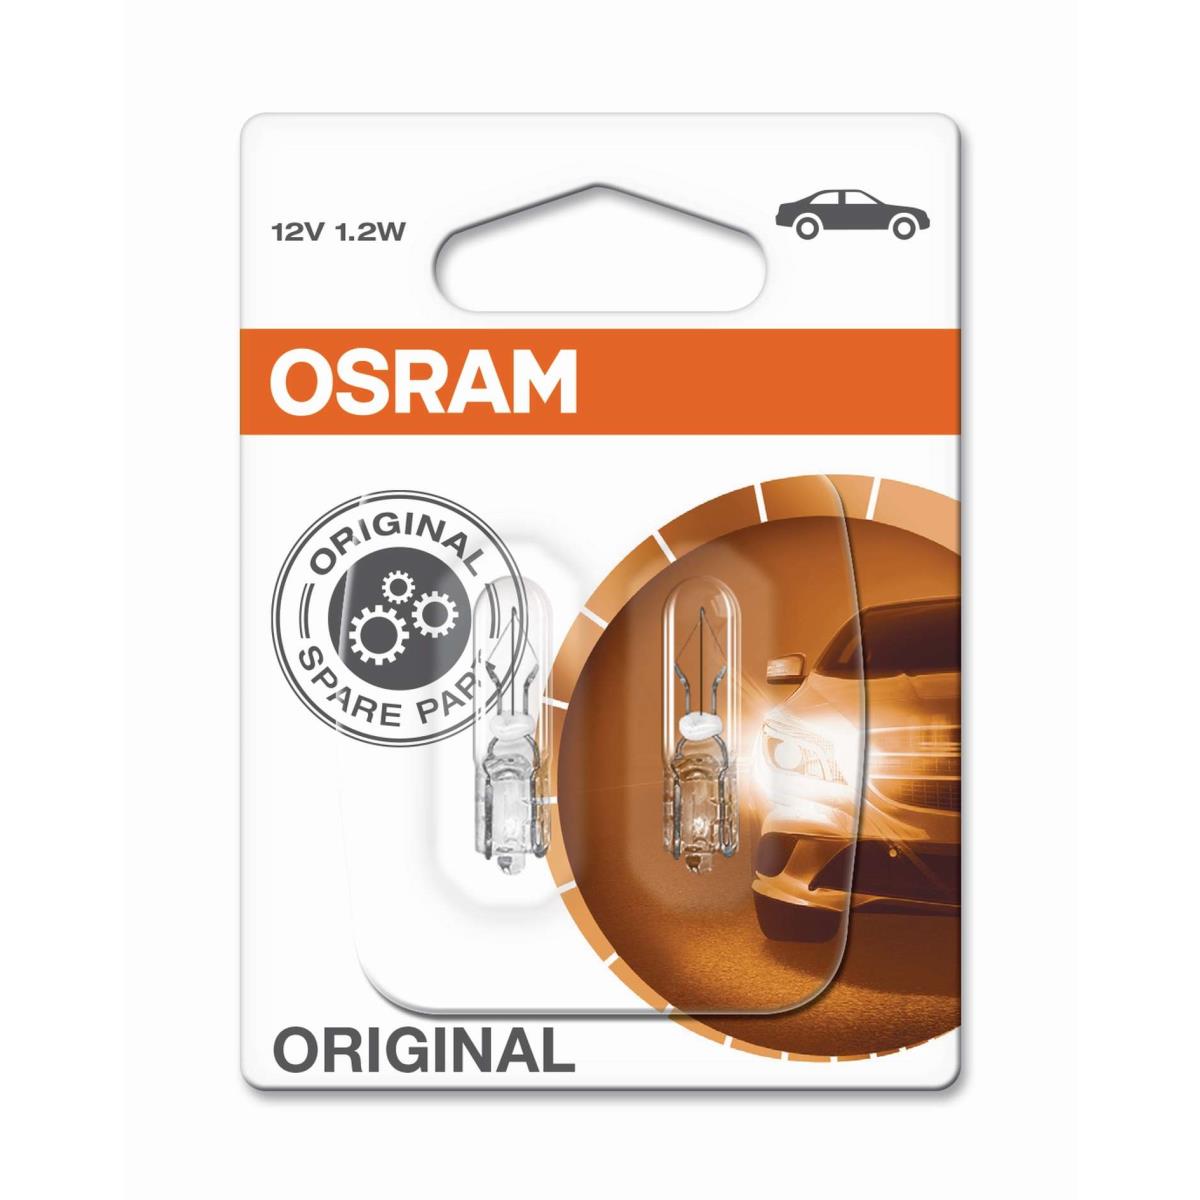 Osram 12V Lampe mit Glasquetschsockel 12V 1,2W Sockel W2x4.6d